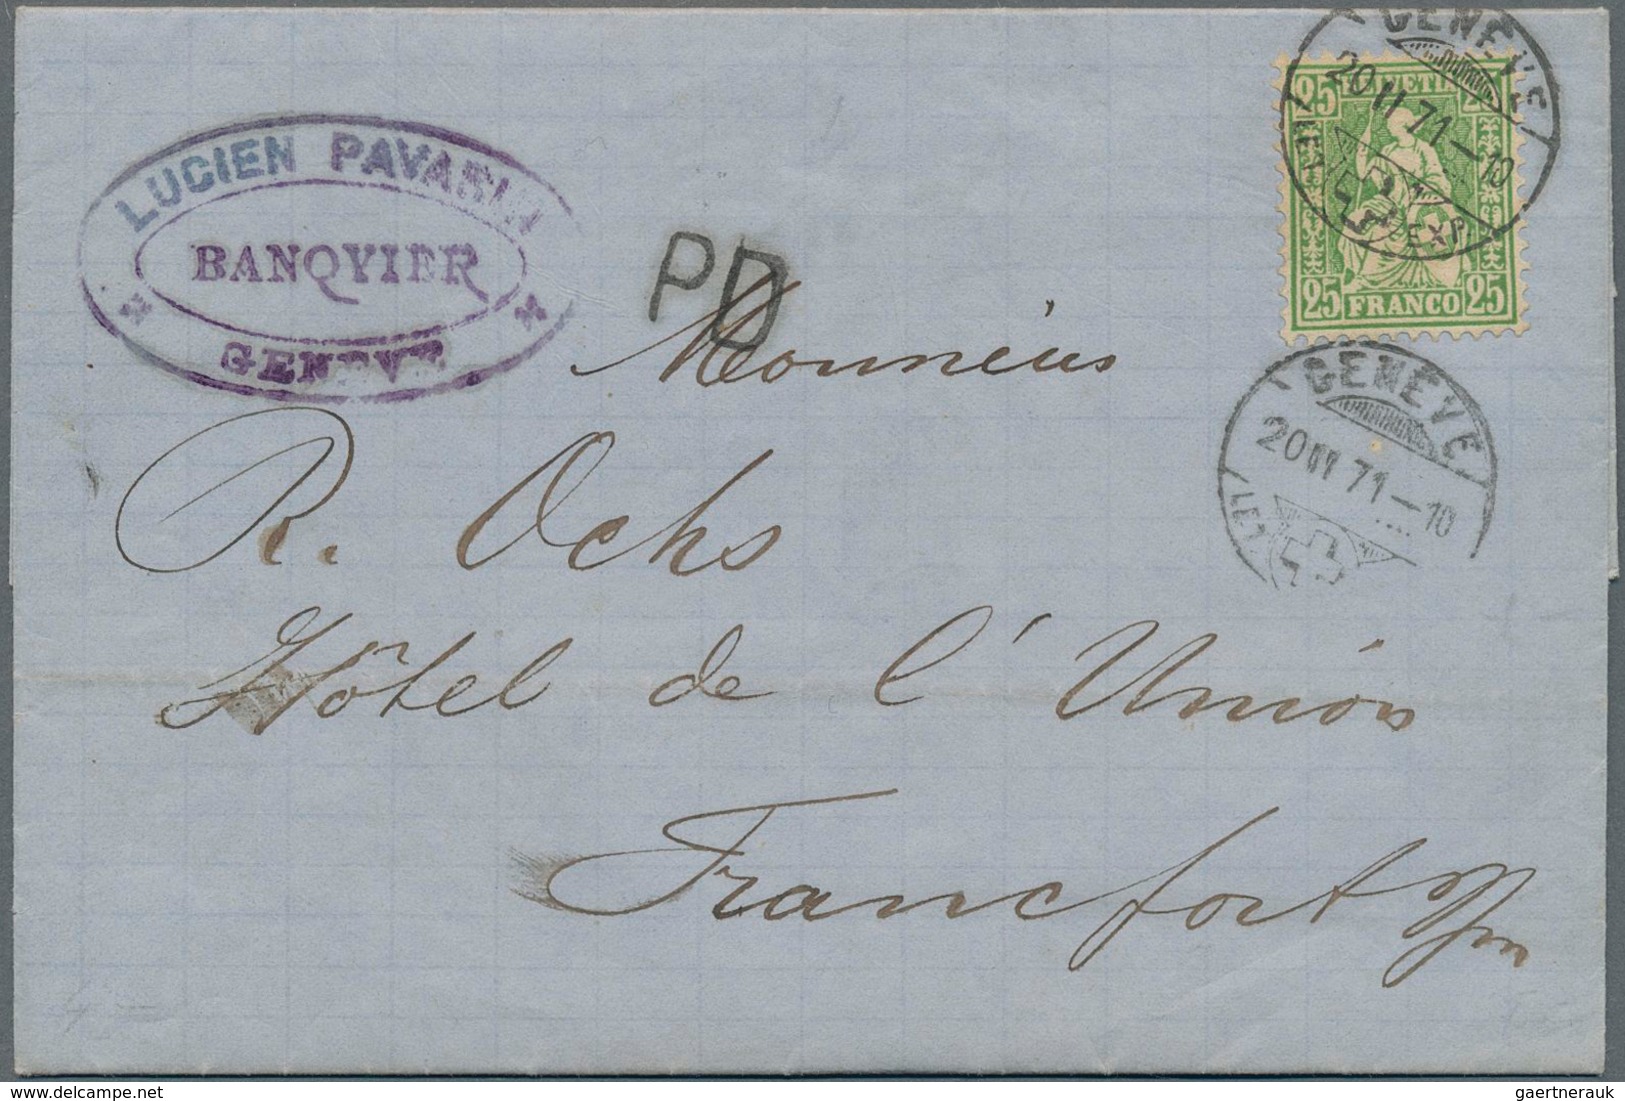 Schweiz: 1871, Postsperre: 25 C Grün "Stehende Helvetia" Als Portogerechte Einzelfrankatur Auf Kompl - Neufs